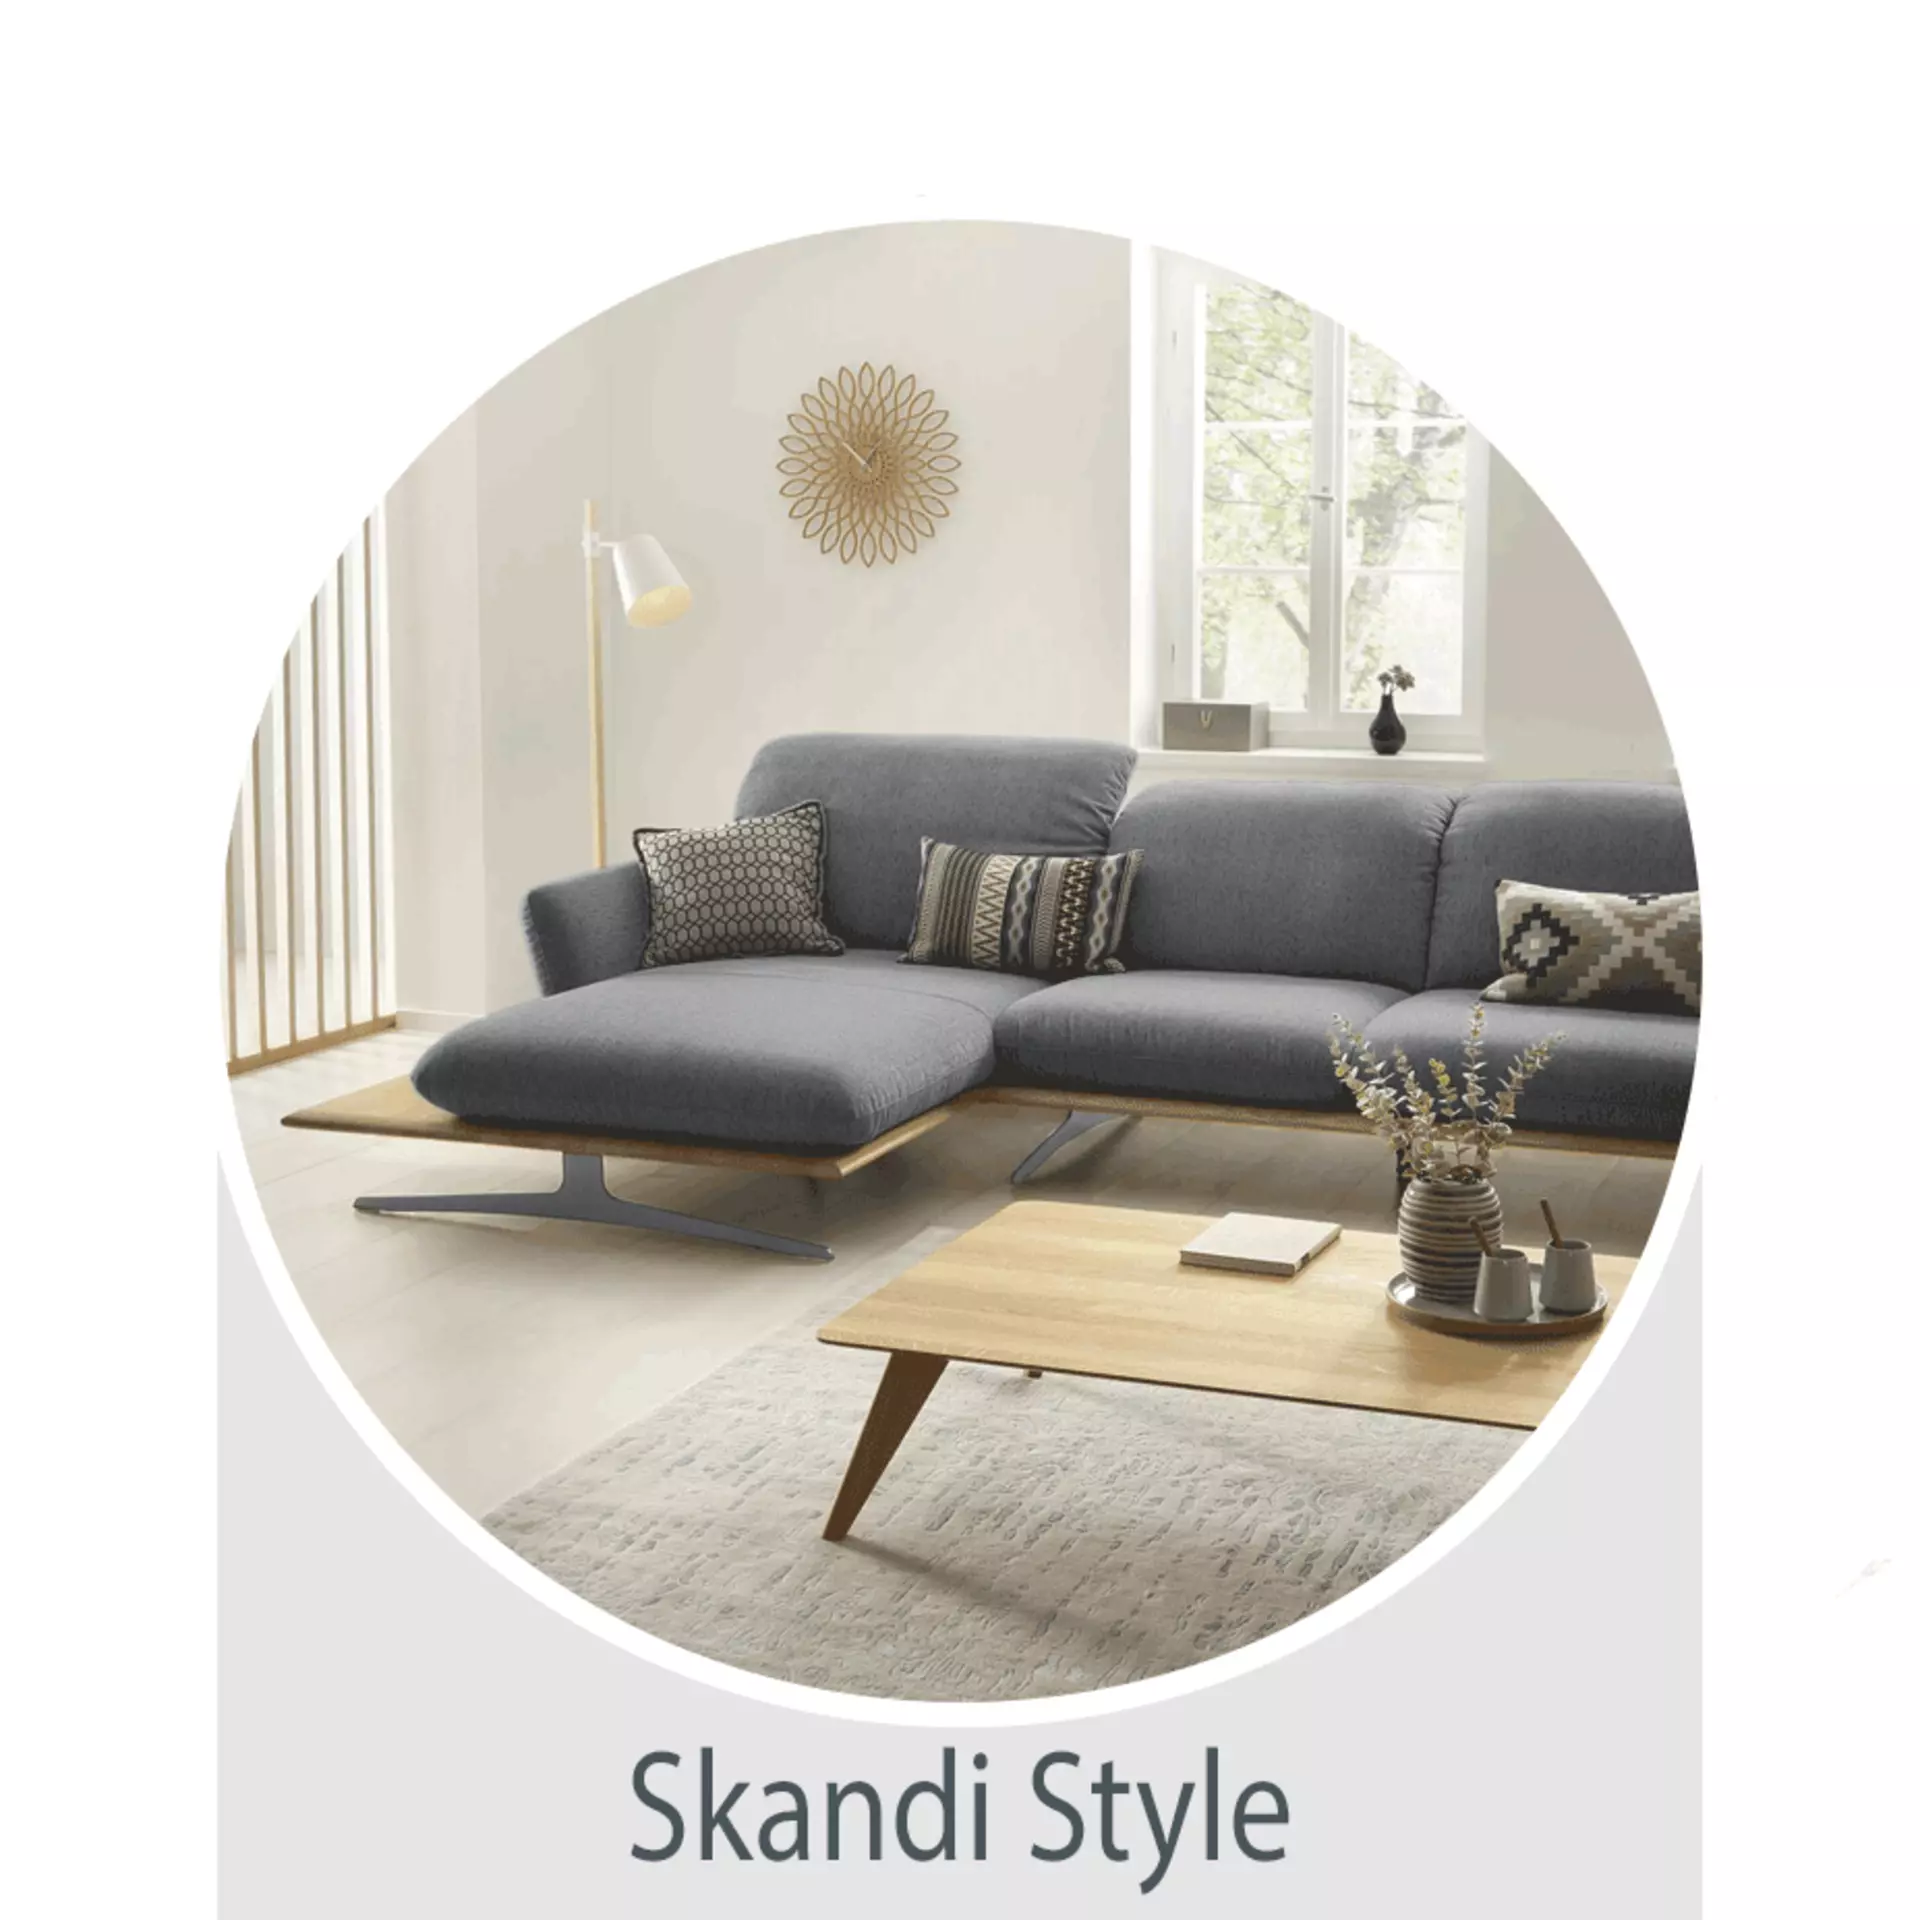 Der Wohntrend Skandi Style -  jetzt bei Möbel Inhofer entdecken und inspirieren lassen